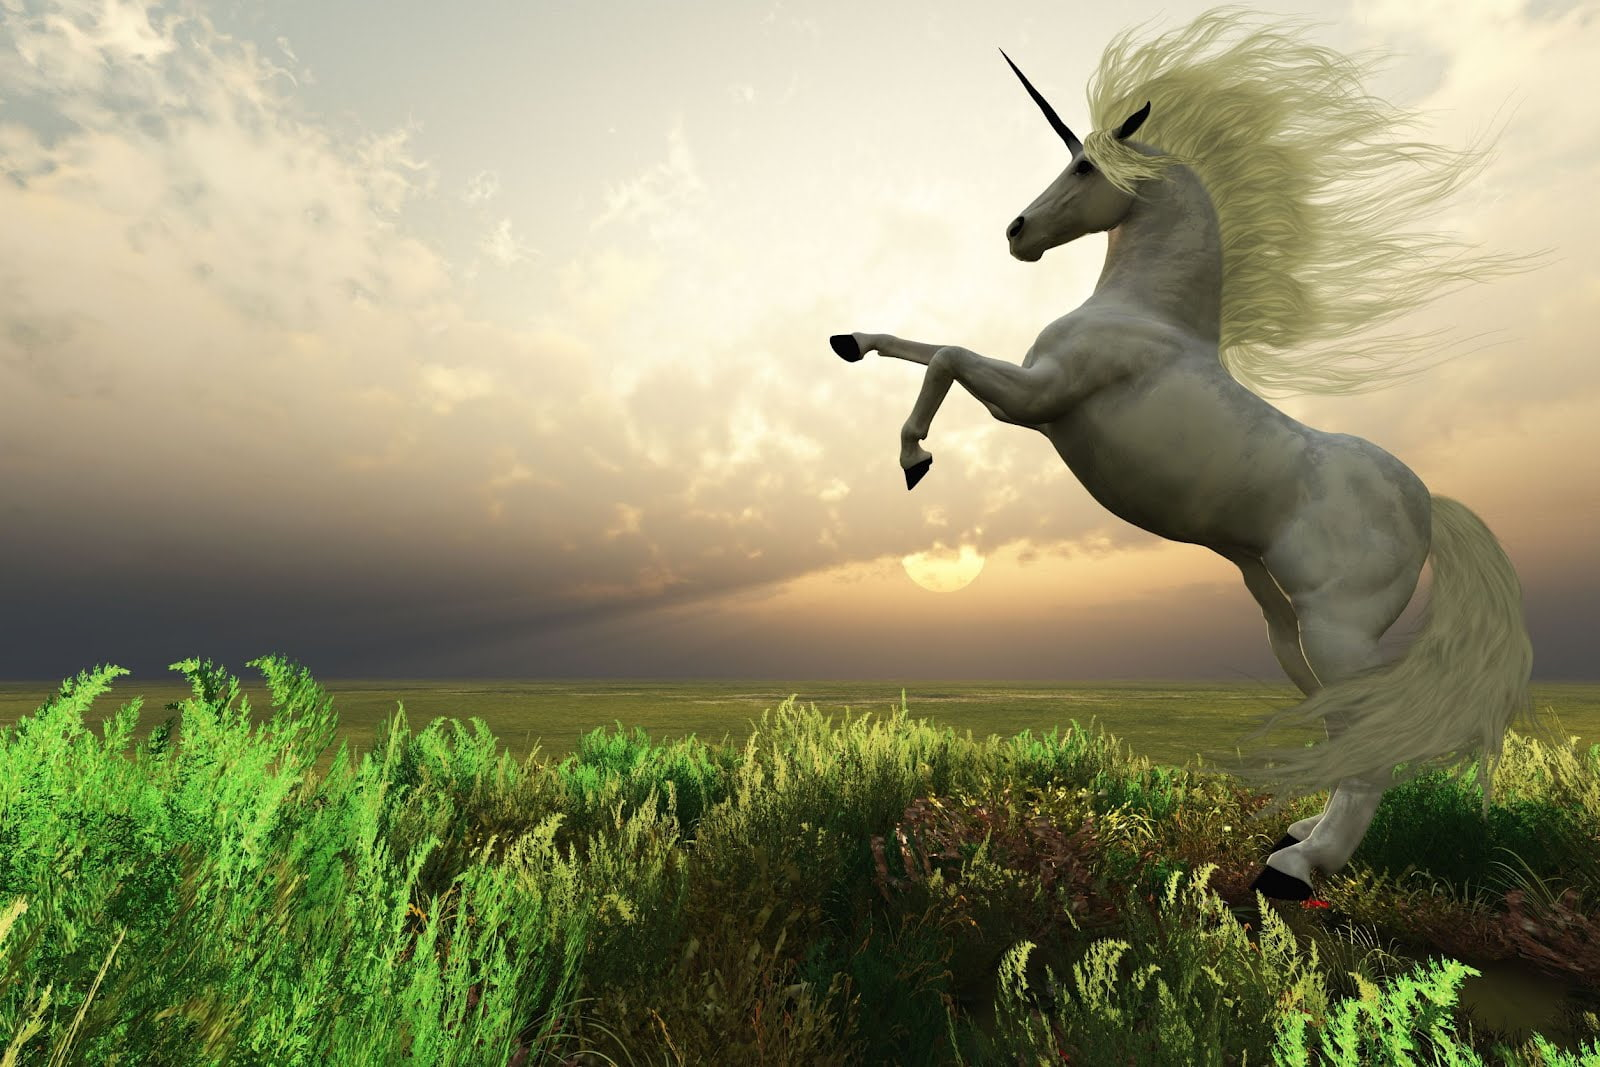 Animales, cuentos, fantasia, mitologia, mitos, unicorn wallpaper, unicornio-real